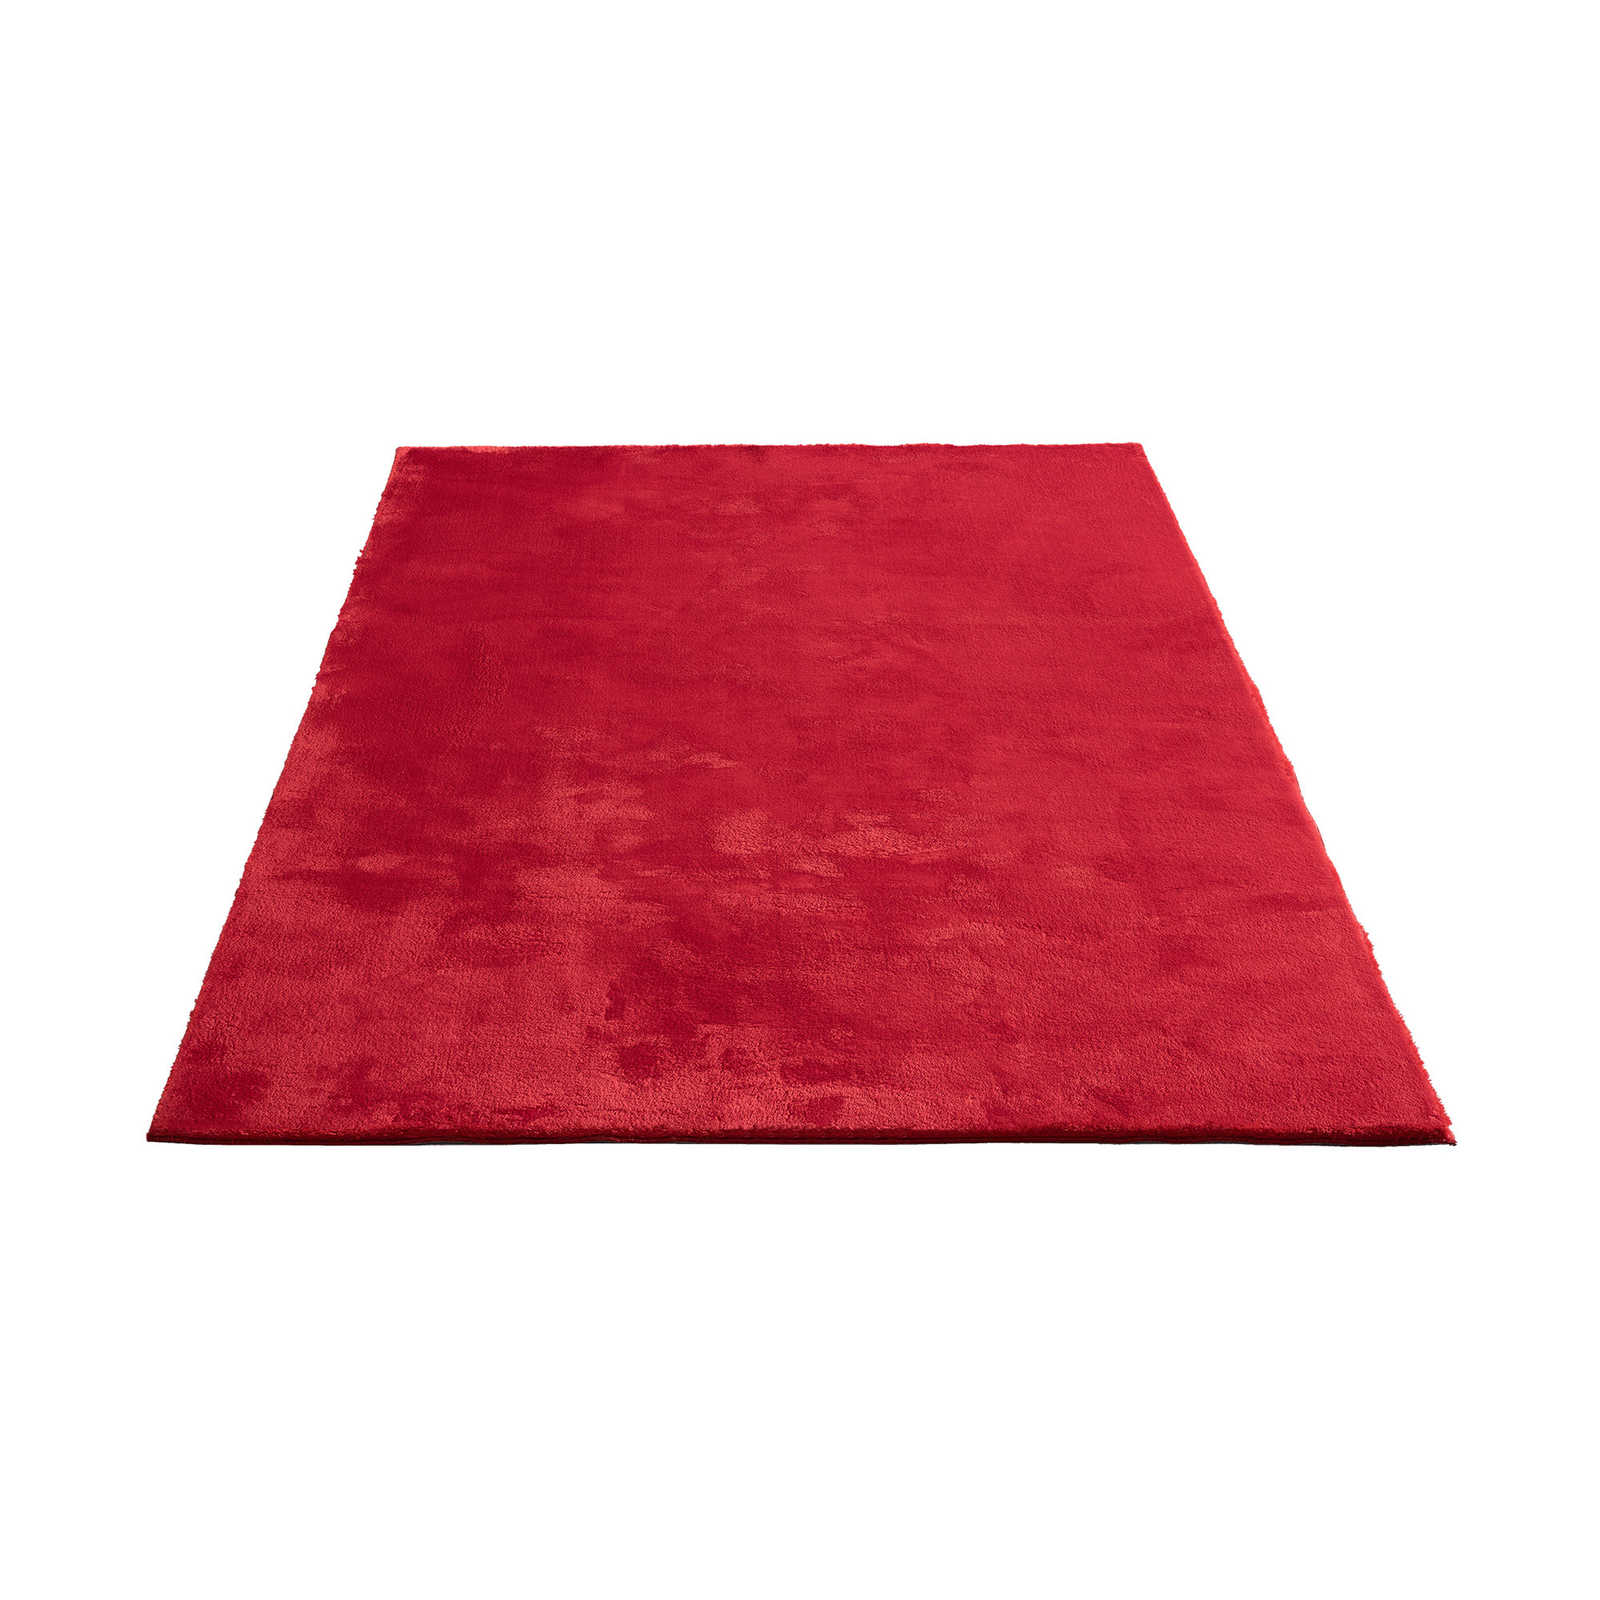 Besonders weicher Hochflor Teppich in Rot – 240 x 200 cm
